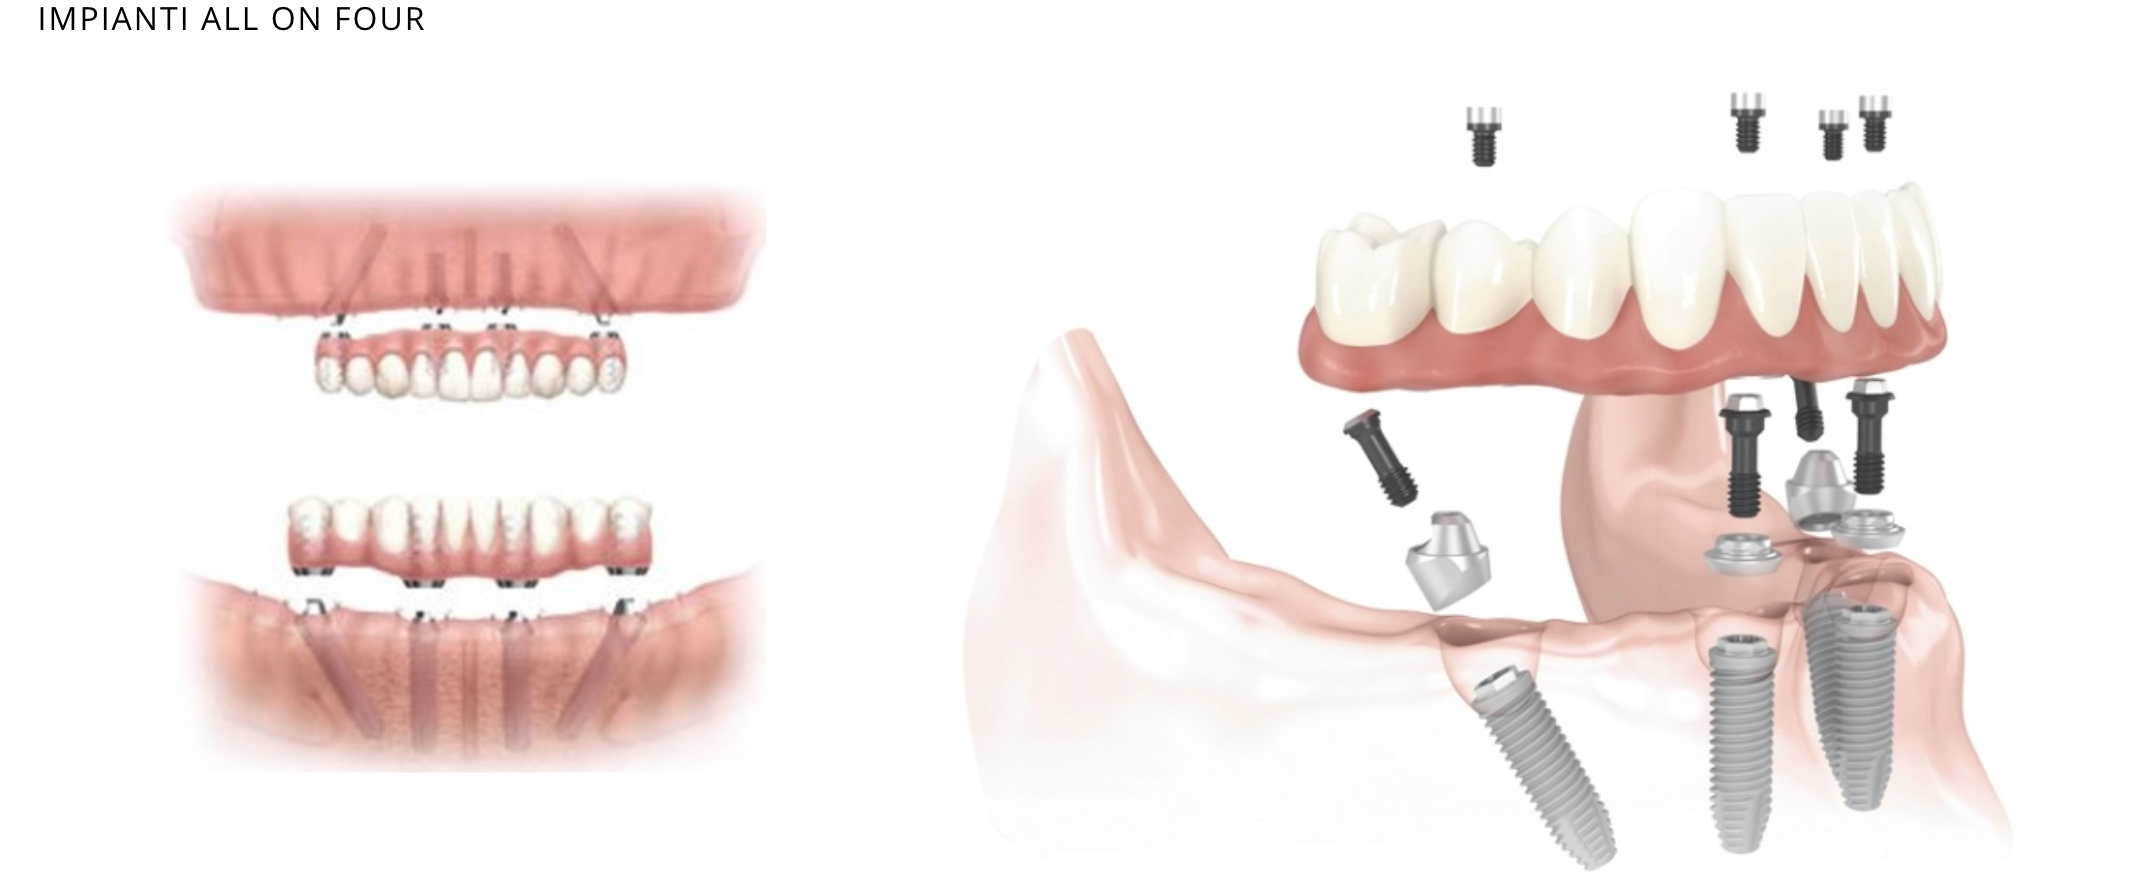 Имплантация sup aznona com. Имплантация зубов all on 4. Имплантация зубов по технологии «all on 4». All on 4 имплантация Нобель.